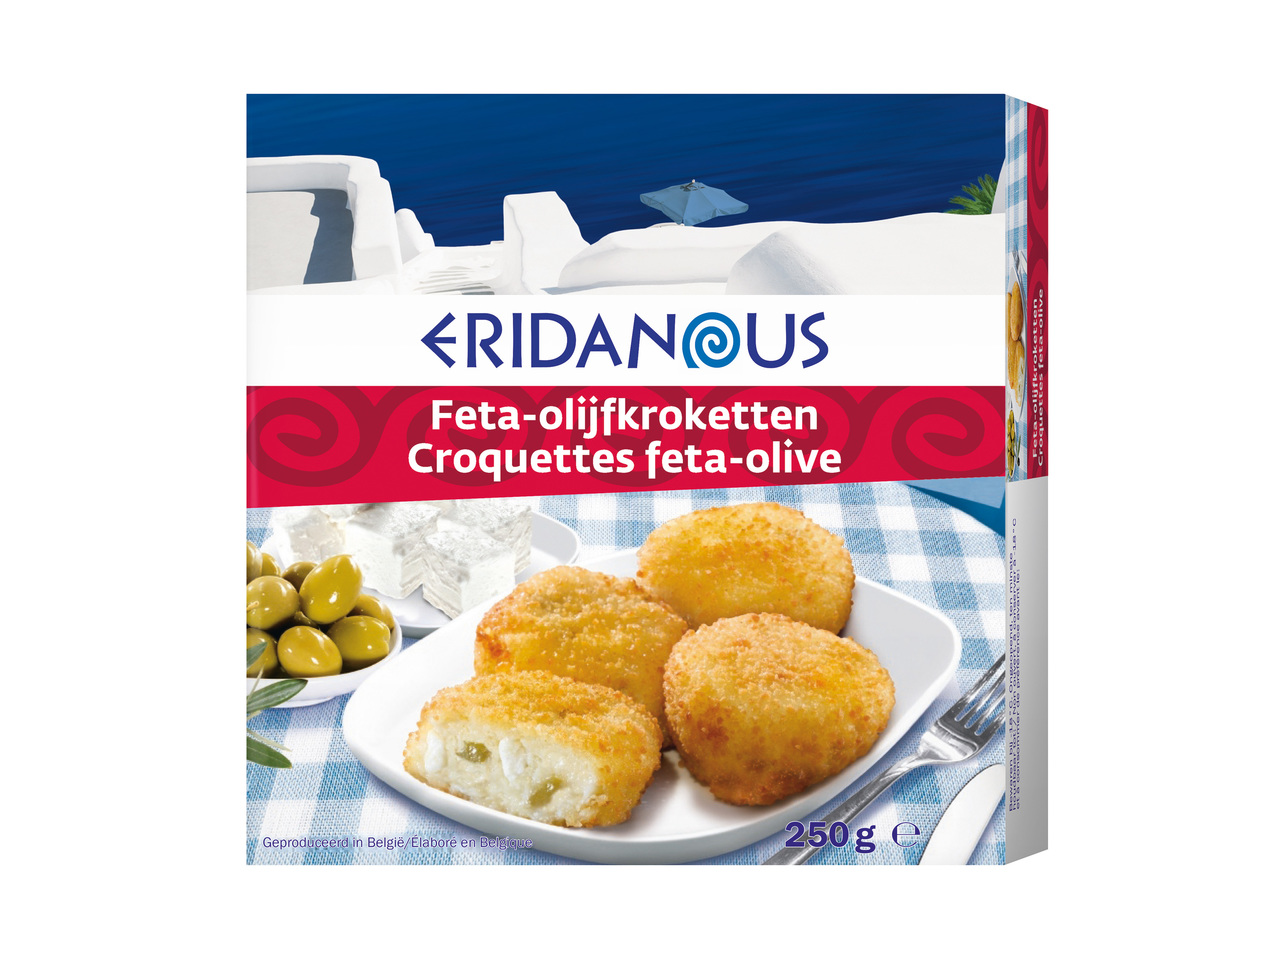 Croquettes feta et olives1